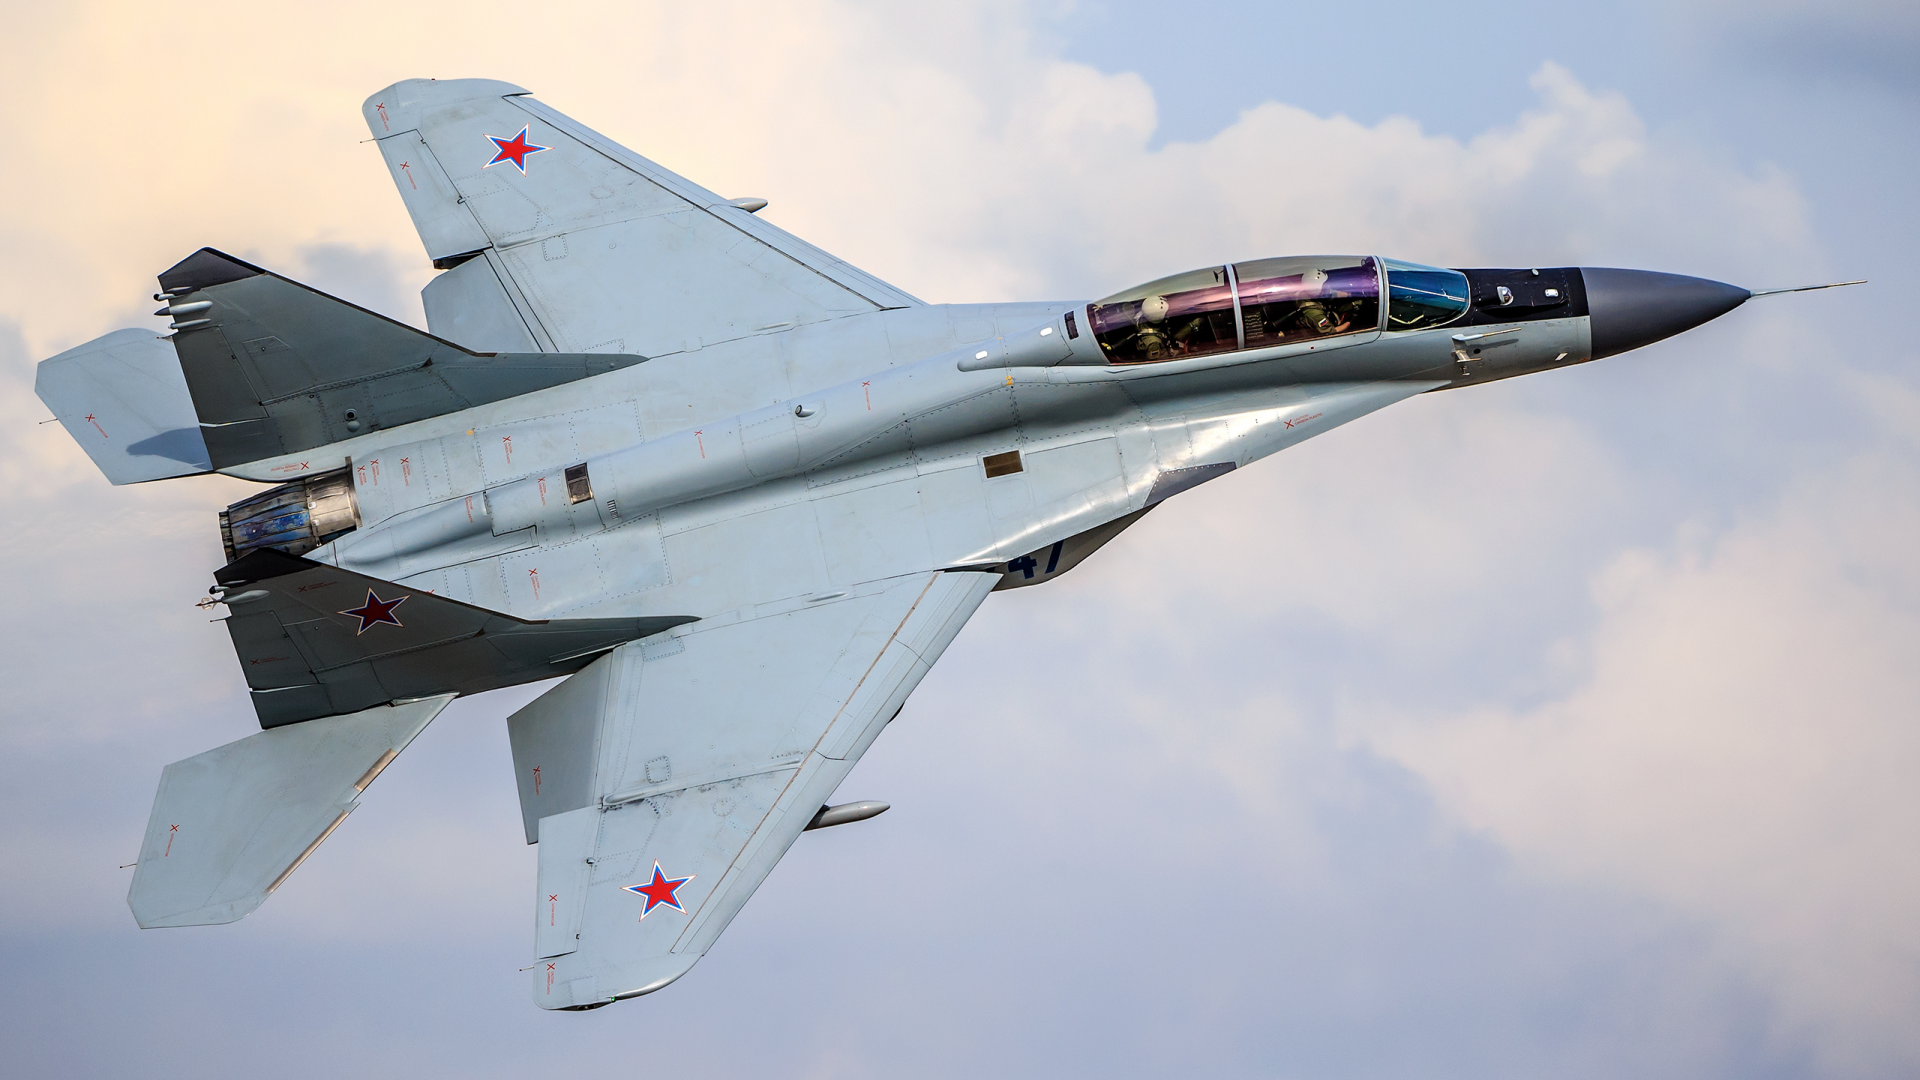  миг-35, fulcrum-f, самолёт, многоцелевой, российский